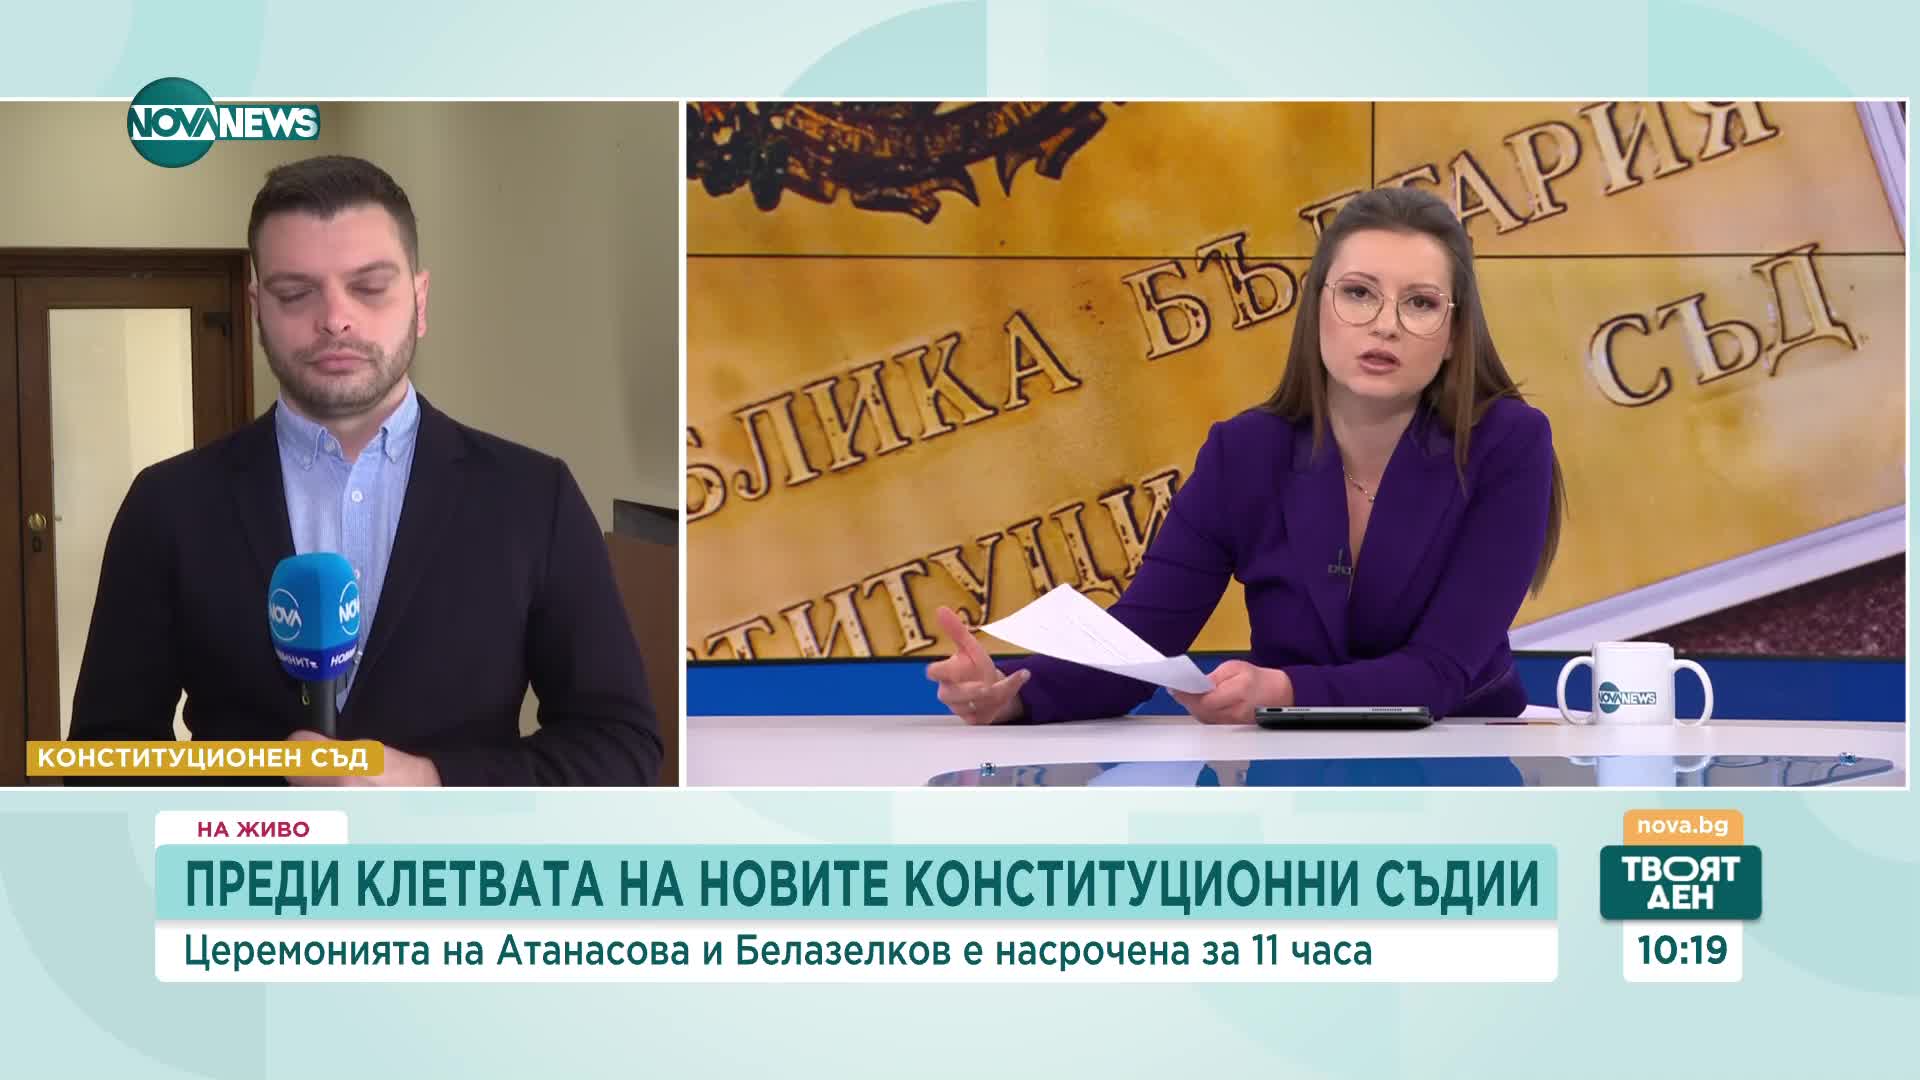 Президентът няма да присъства на клетвата на Атанасова и Белазелков